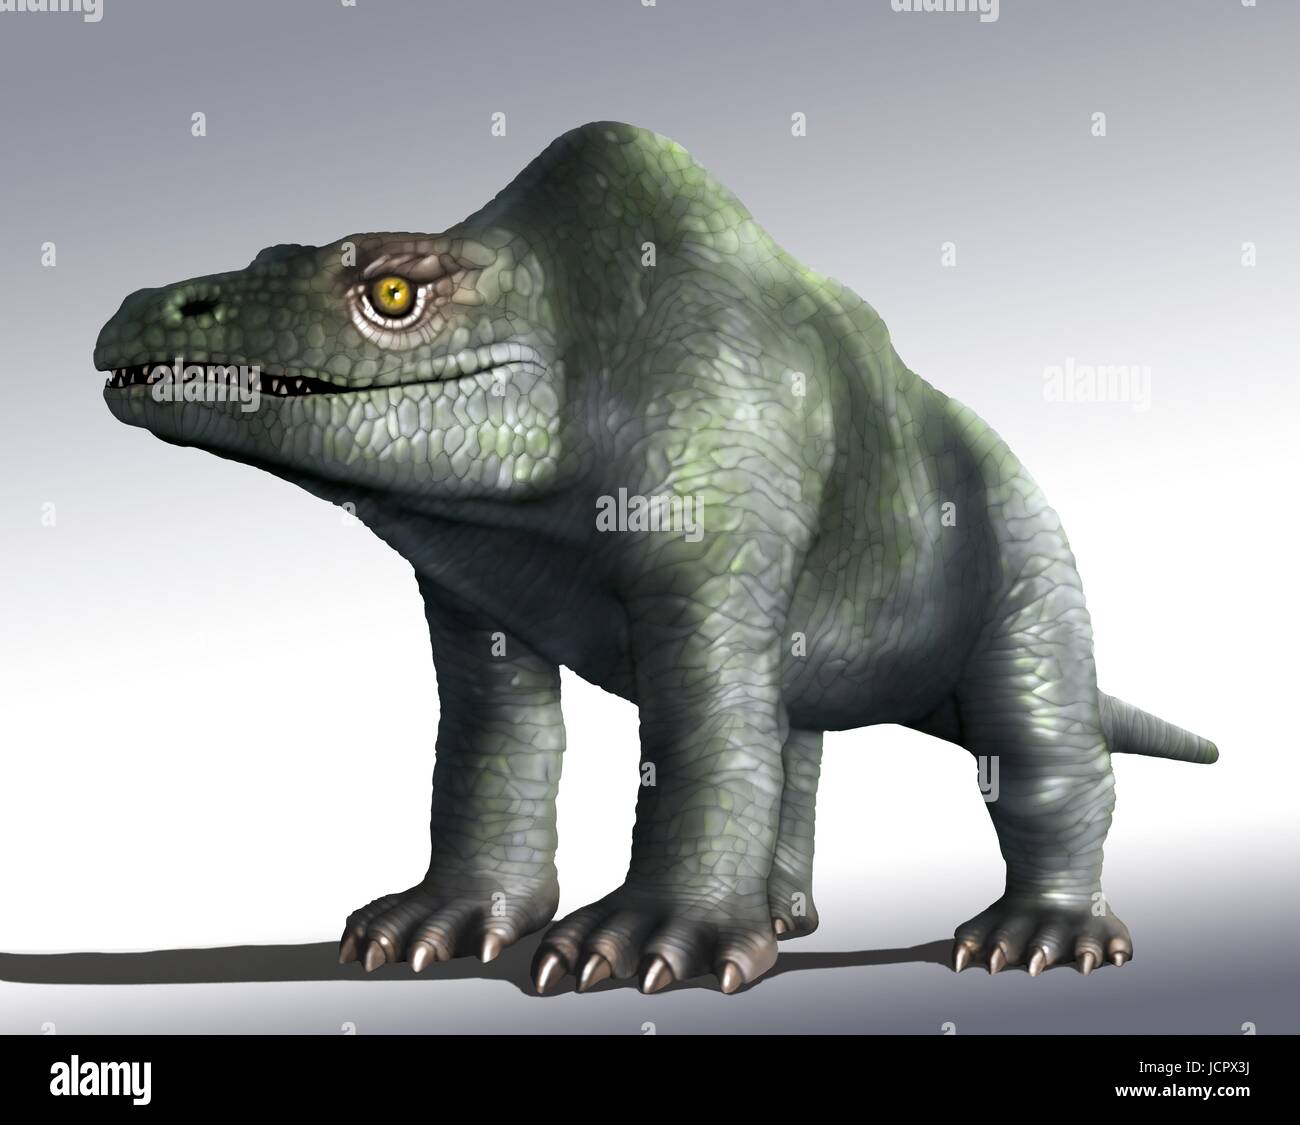 Megalosaurus è genere estinto il mangiar carne dinosauri,theropods,dal Medio giurassico in terra di storia,166 milioni di anni fa.It ha vissuto in quello che è oggi il sud dell'Inghilterra.Il primo fossile di dinosauro mai trovata,come molto tempo fa come 1676,era probabilmente un frammento osseo della coscia che apparteneva a Megalosaurus.Questo animale era di dimensioni medie theropod,6 a 7 m di lunghezza con un peso di circa una tonnellata.Questa illustrazione mostra animali come era stato originariamente immaginato di apparire,indietro nel diciannovesimo secolo.L'immagine si basa famose statue animale in London Crystal Palace Park.Sappiamo ora che ha camminato due gambe come altri theropods. Foto Stock